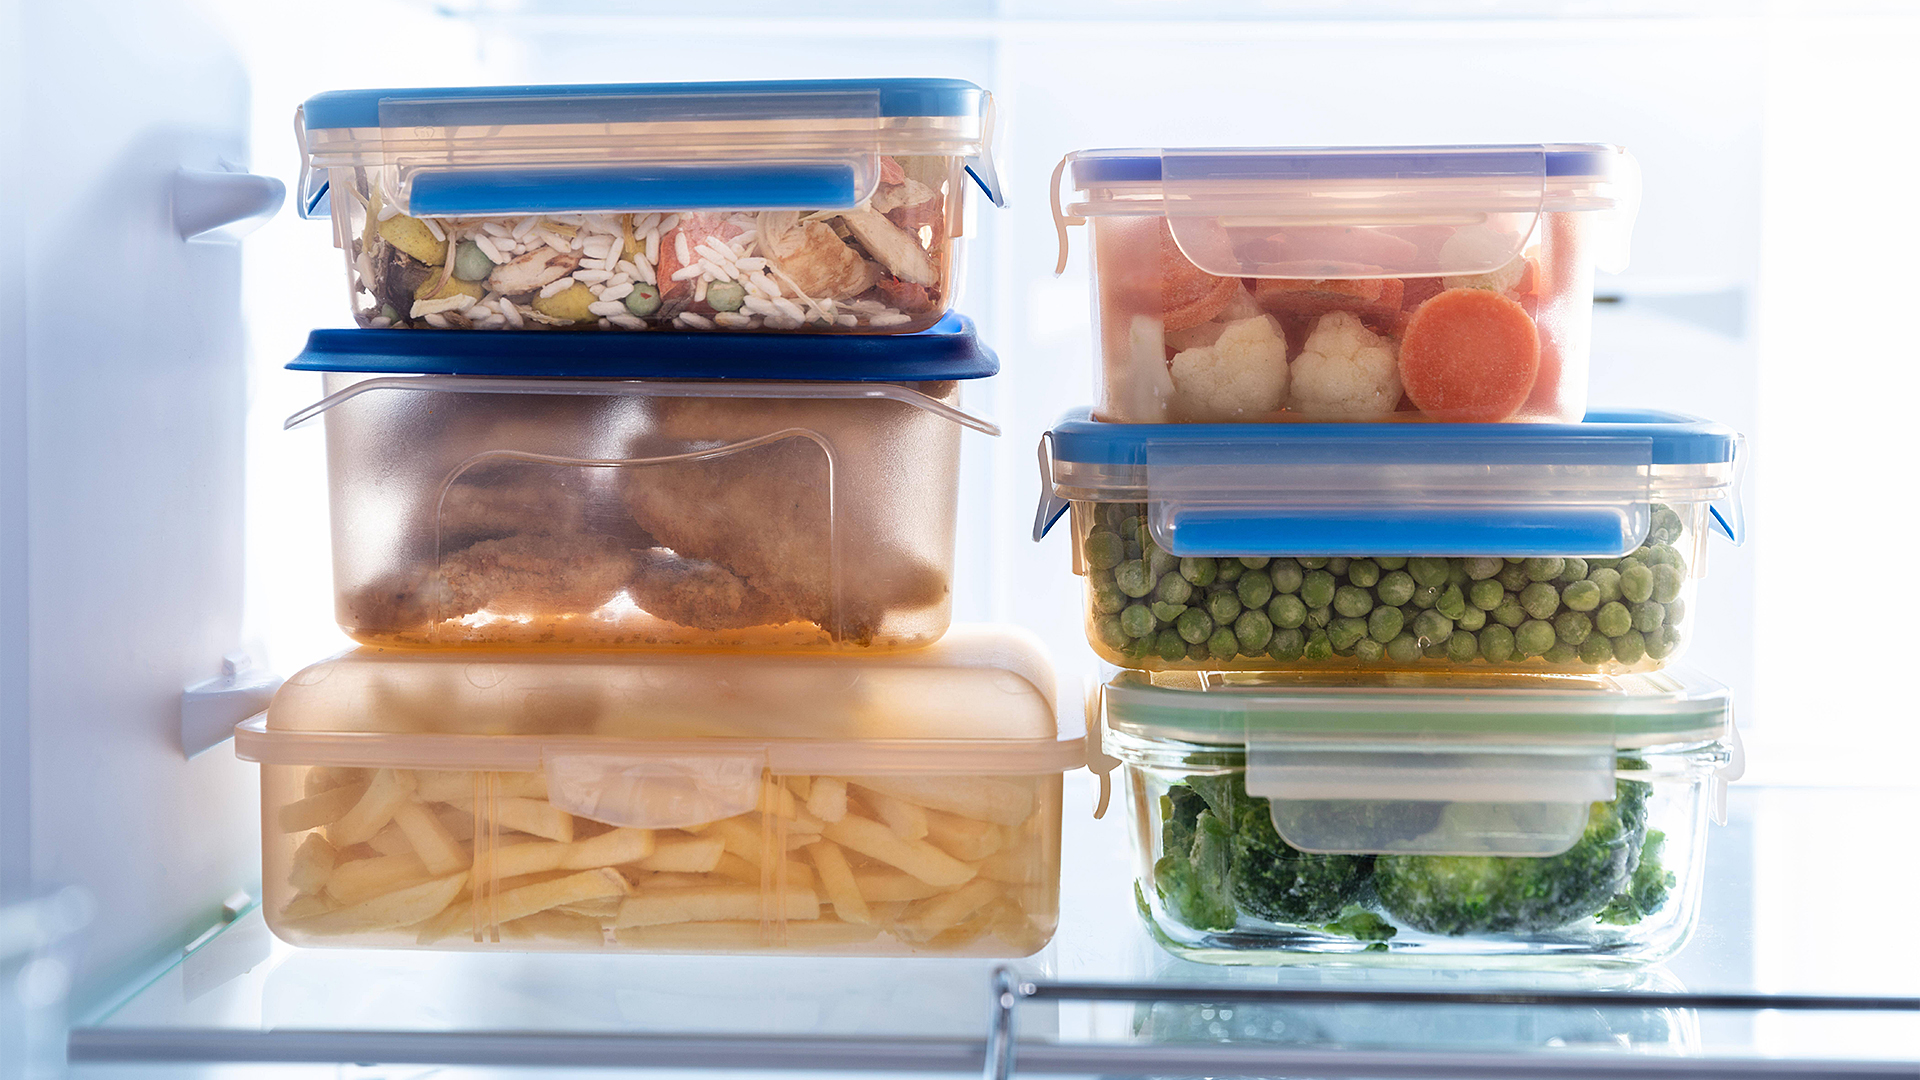 Mehrere Plastikdosen mit Lebensmitteln stehen in einem beleuchteten Kühlschrank.